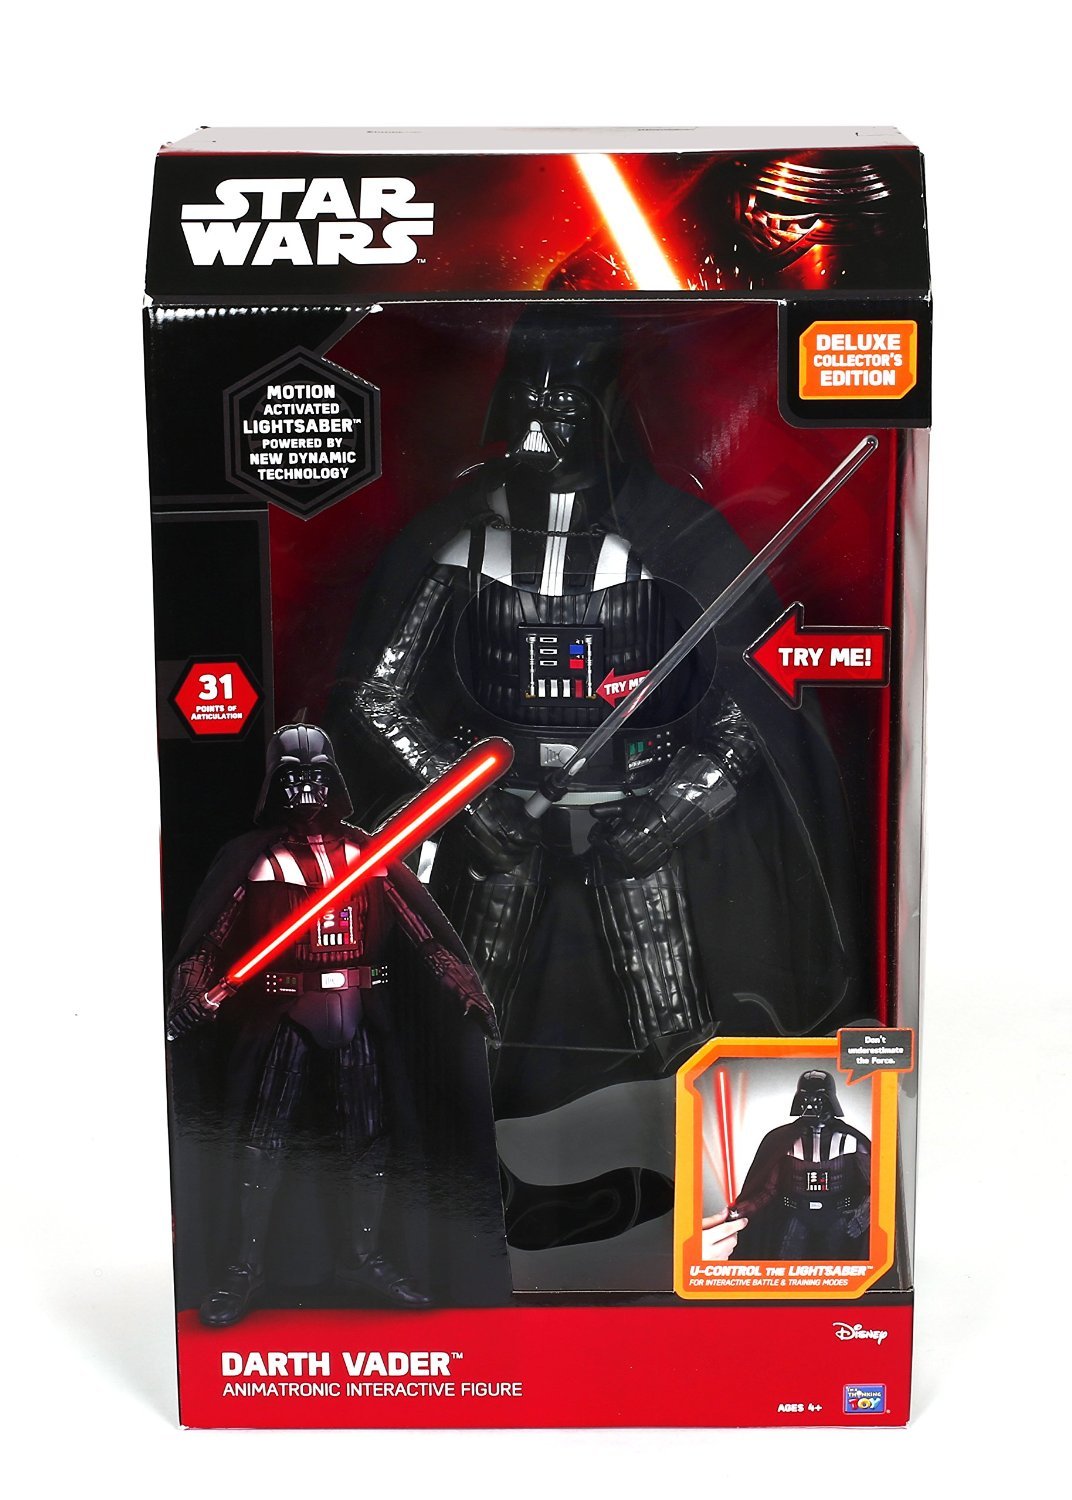 (44 cm, Darth Vader) - Star Wars